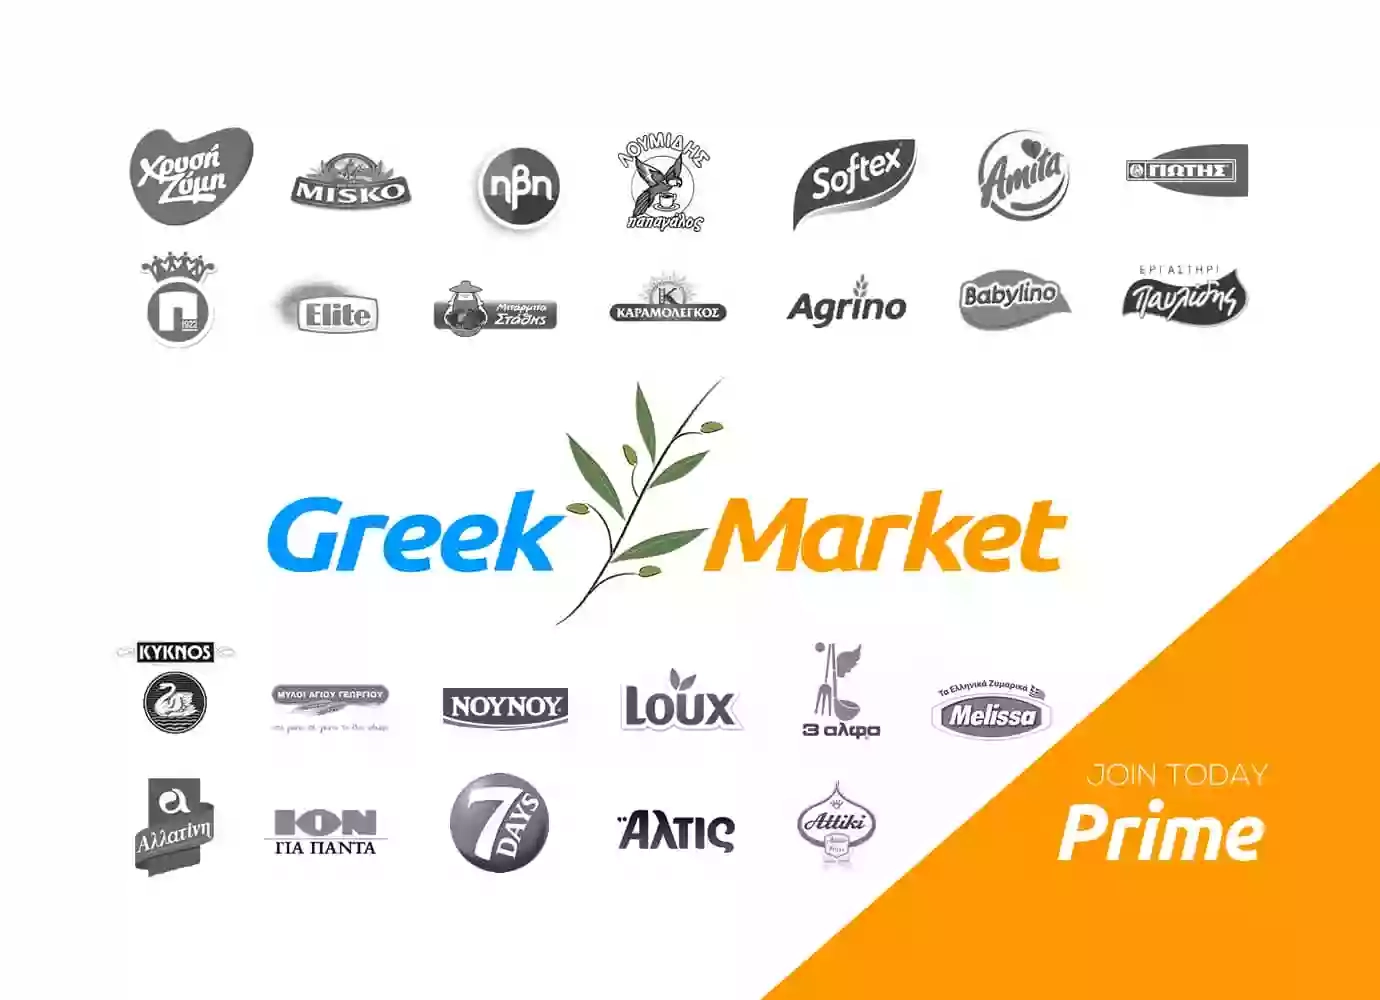 Greek Market